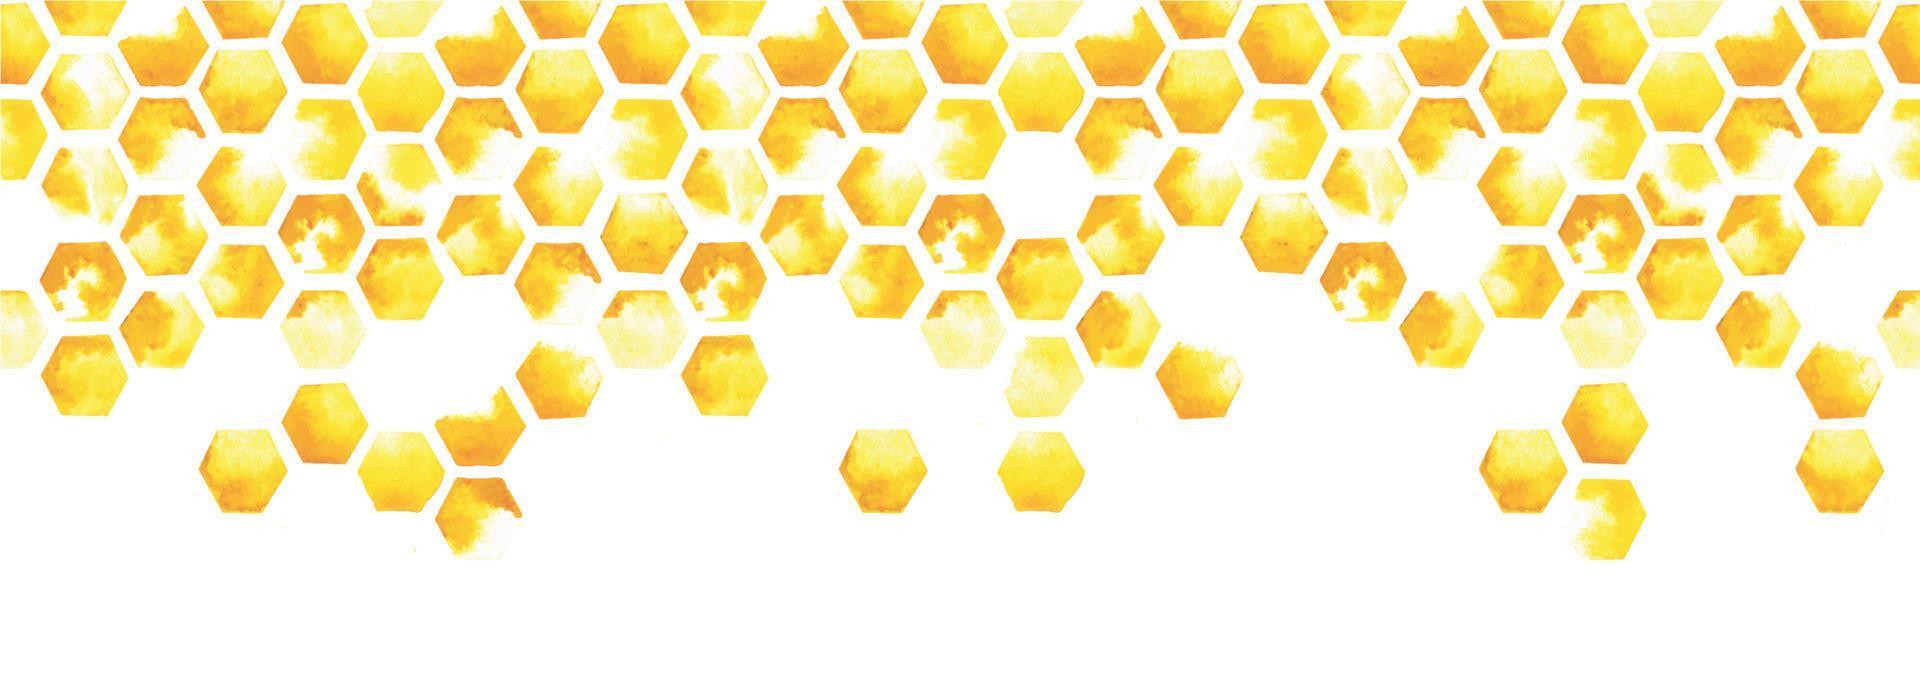 bordure transparente d'illustration aquarelle, bannière web. jaune nid d'abeille, imprimé abstrait. carrelage, motif géométrique avec des taches de peinture sur fond blanc vecteur